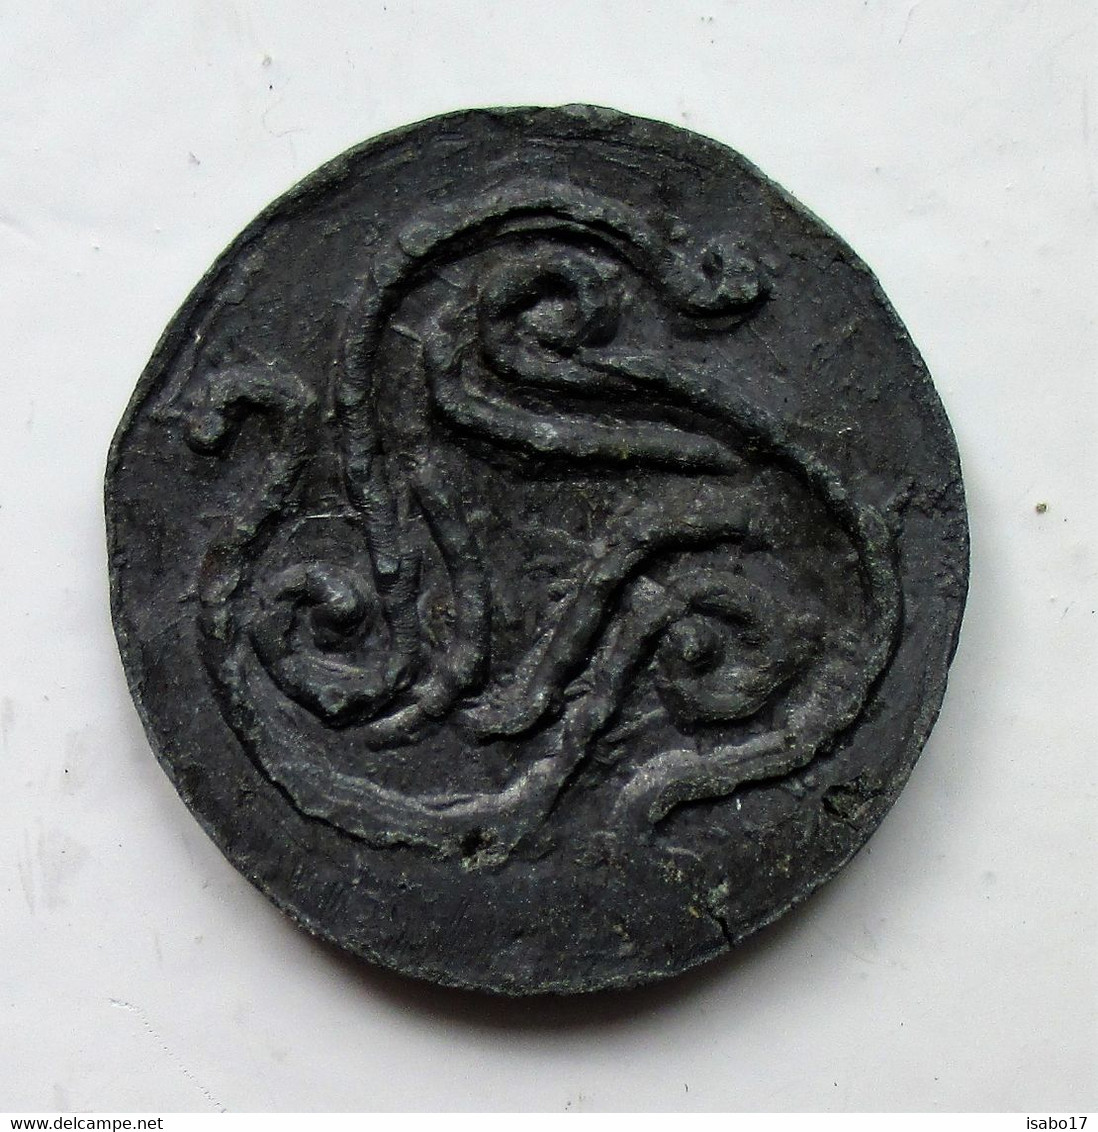 Antike Keltische Münze Mit Triskelezeichen Unbekannt - Unknown Origin